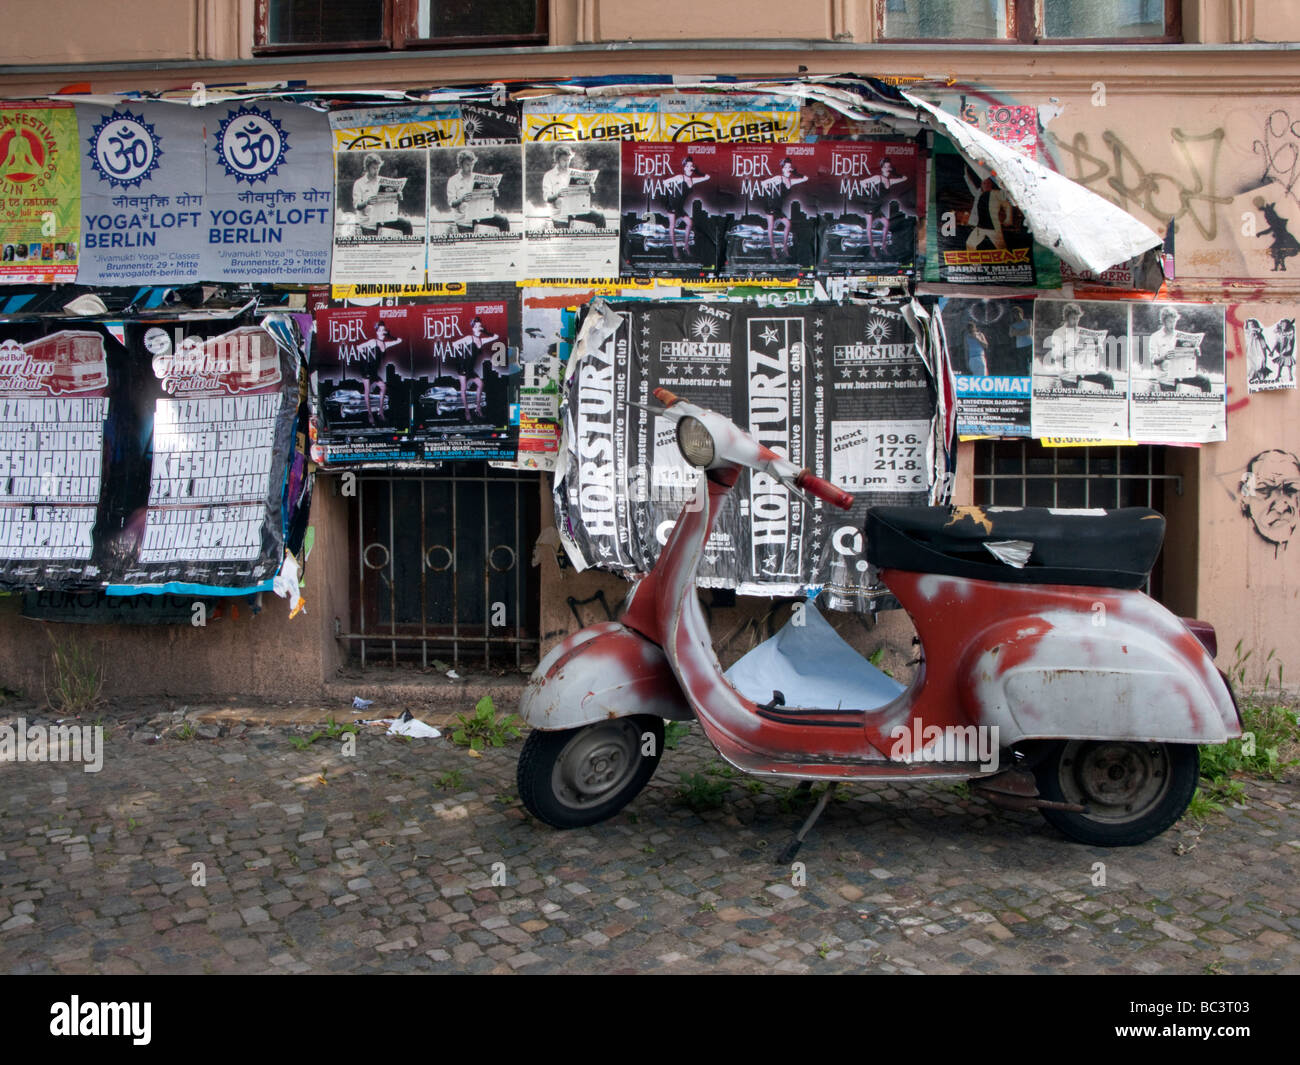 Vieux scooter garé contre mur recouvert de posters dans quartier bohème de Prenzlauer Berg à Berlin Banque D'Images